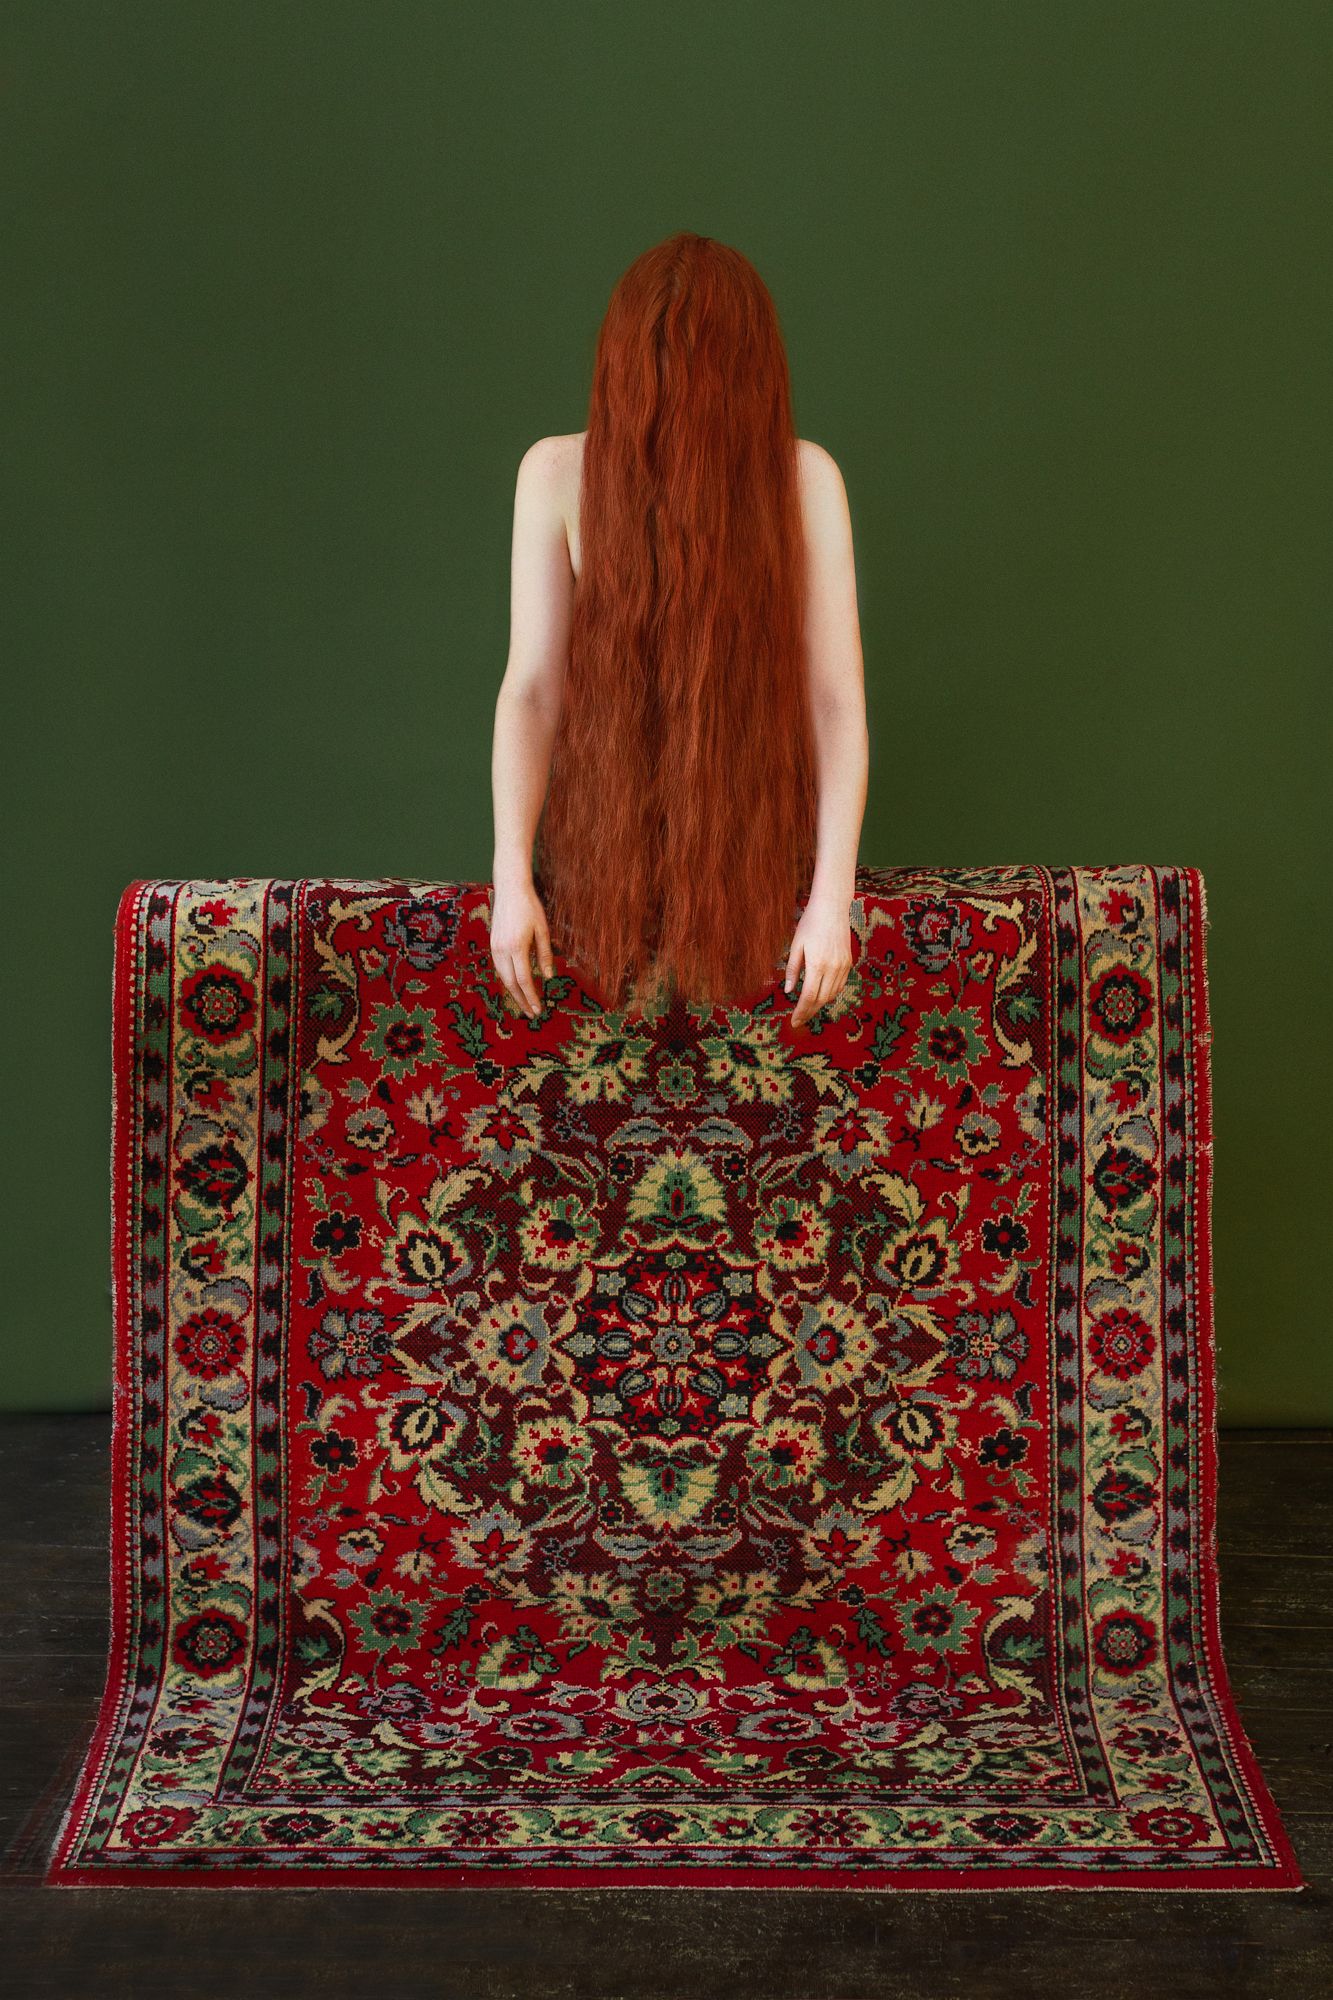 35мм, цвет, печать, женщина, арт, рыжая, длинные волосы, фарфоровая кожа, Ведмеденко Оксана